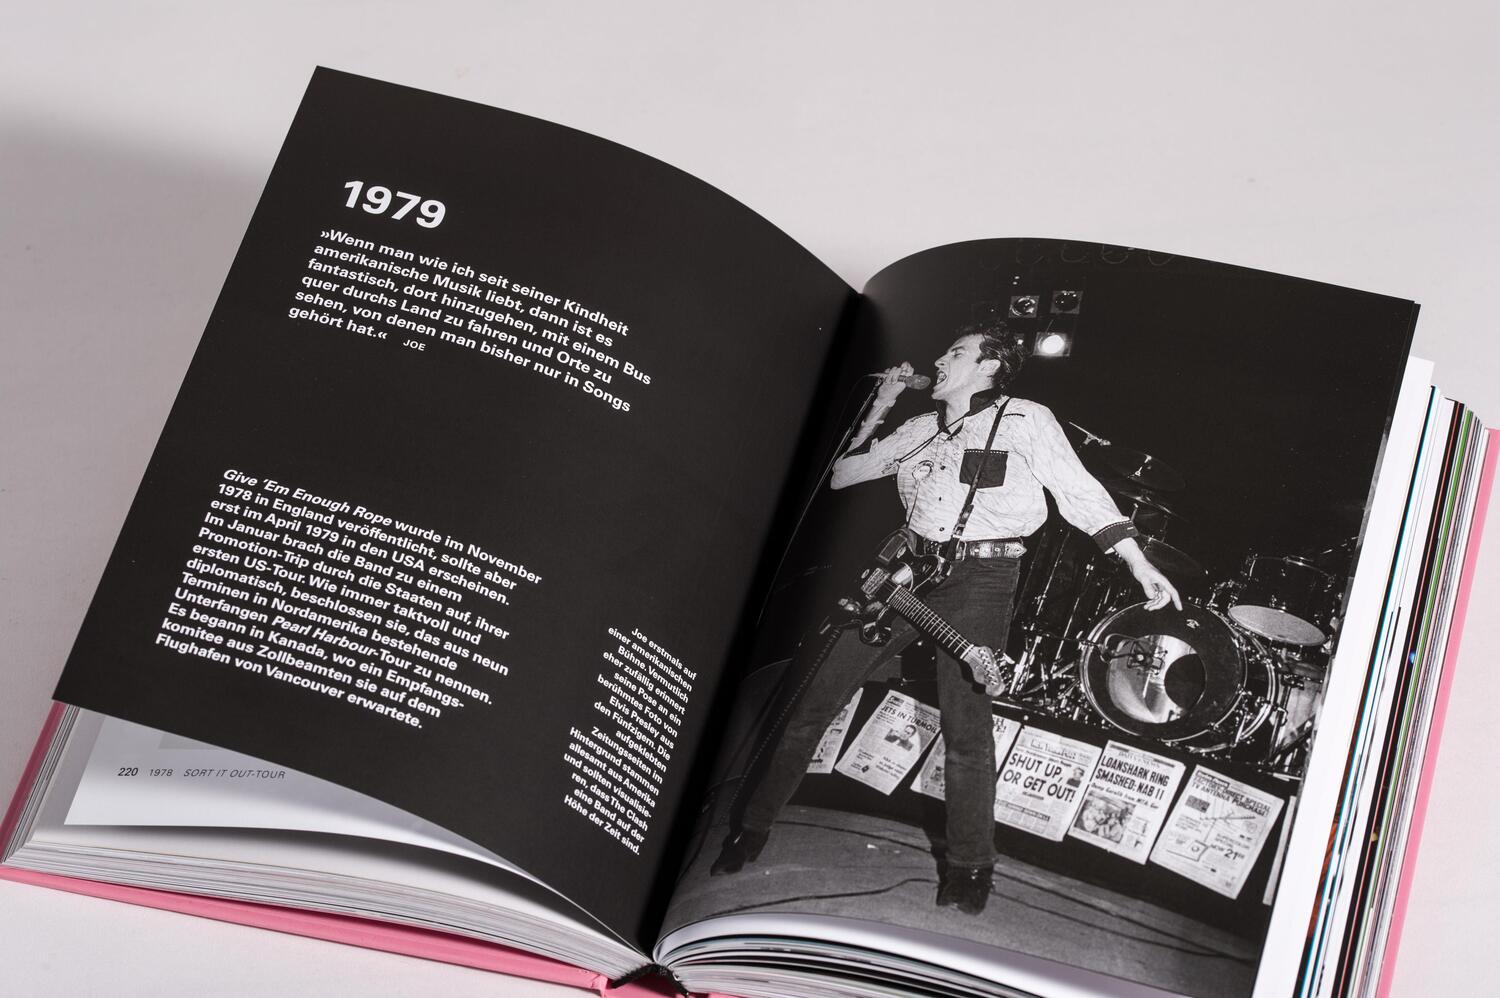 Bild: 9783453273887 | The Clash | Das offizielle Bandbuch | The Clash | Buch | 408 S. | 2022